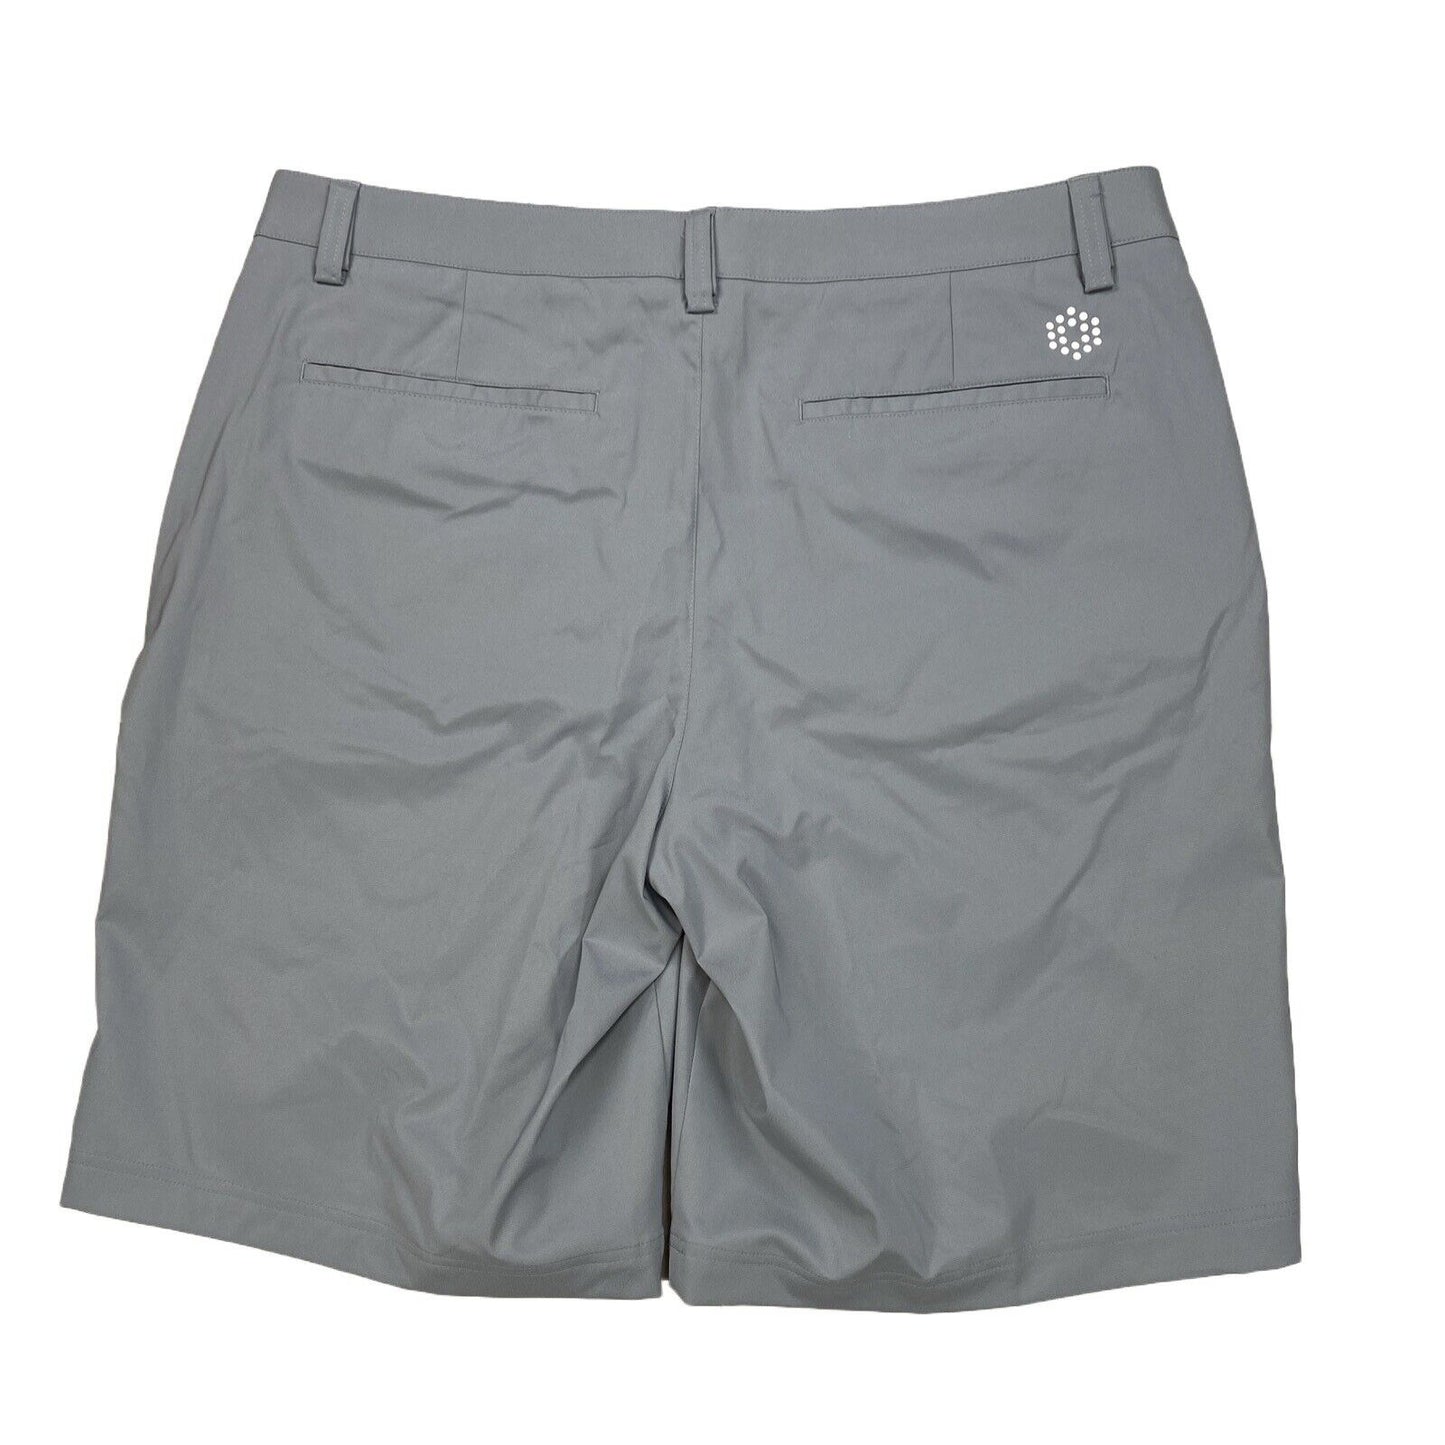 Puma Men's Gray Solid Flat Front Golf Shorts - 40